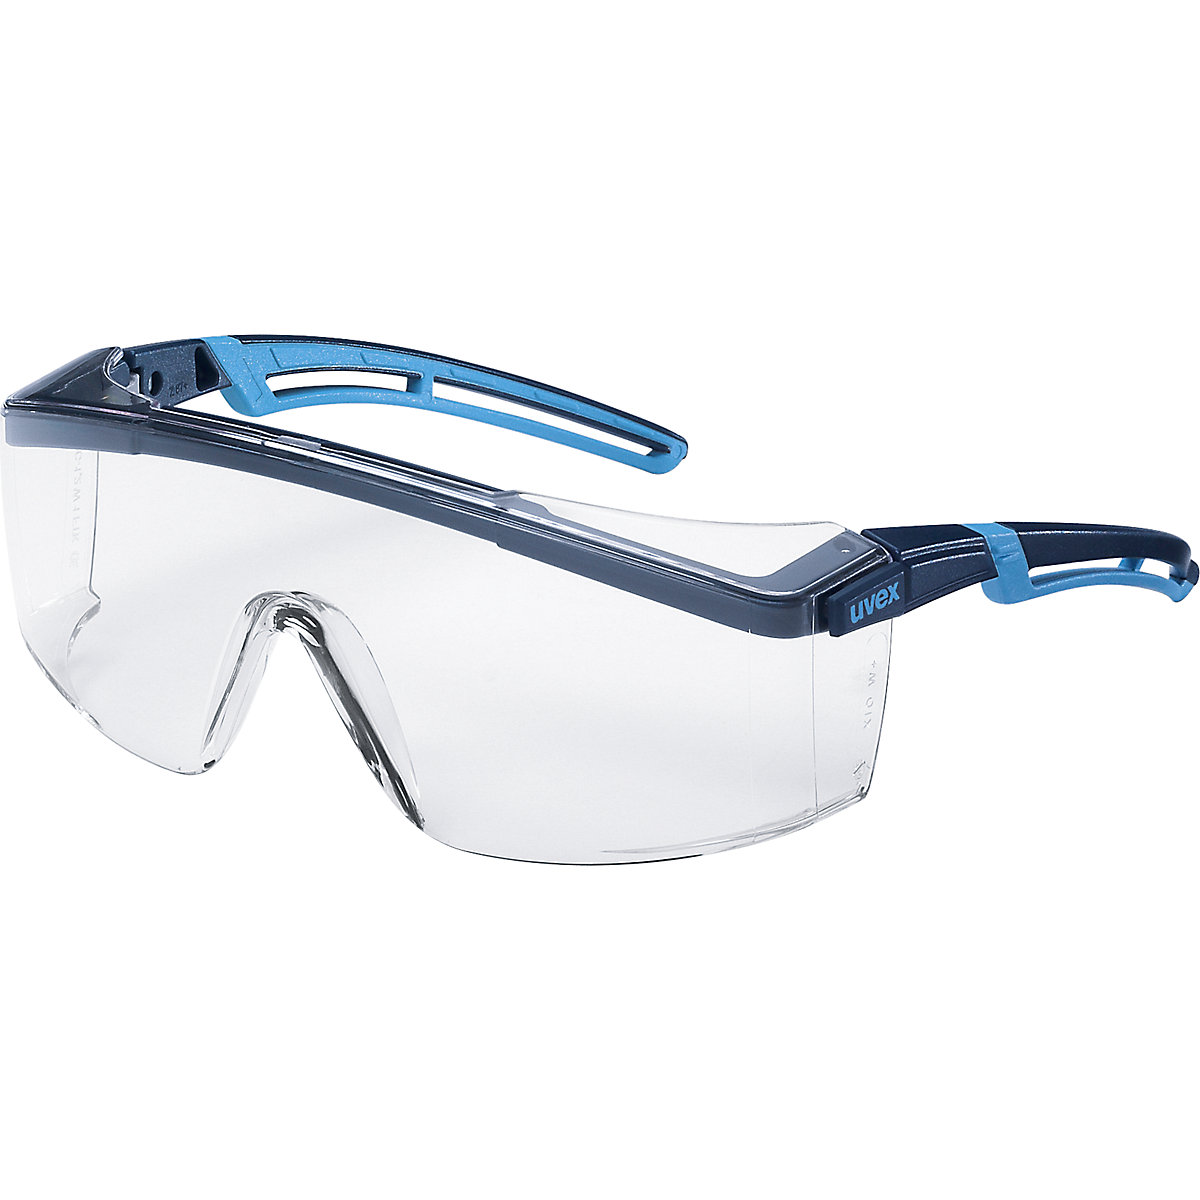 Zaščitna očala atrospec 2.0 - Uvex